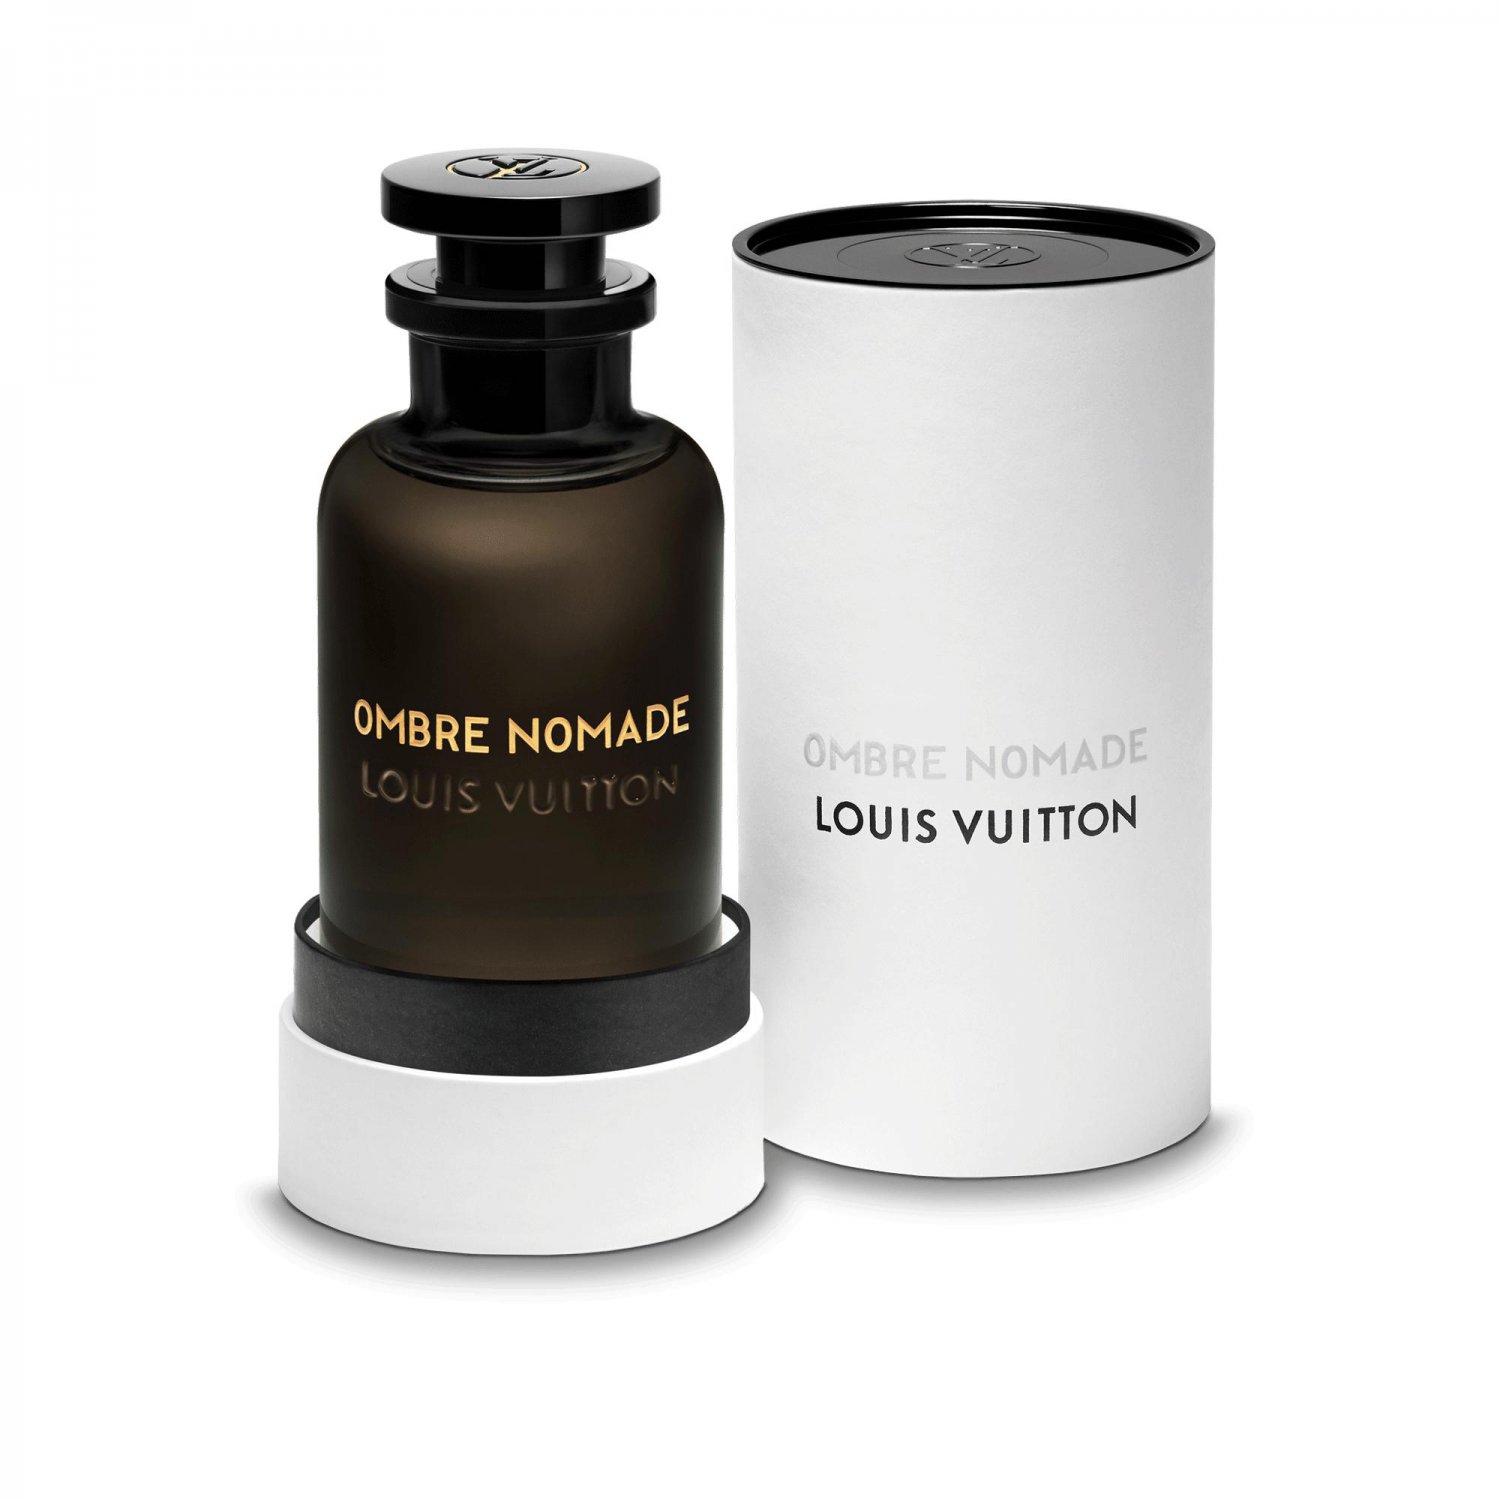 Louis Vuitton Ombre Nomade Perfume, Eau de Parfum 3.4 oz/100 ml Spray.